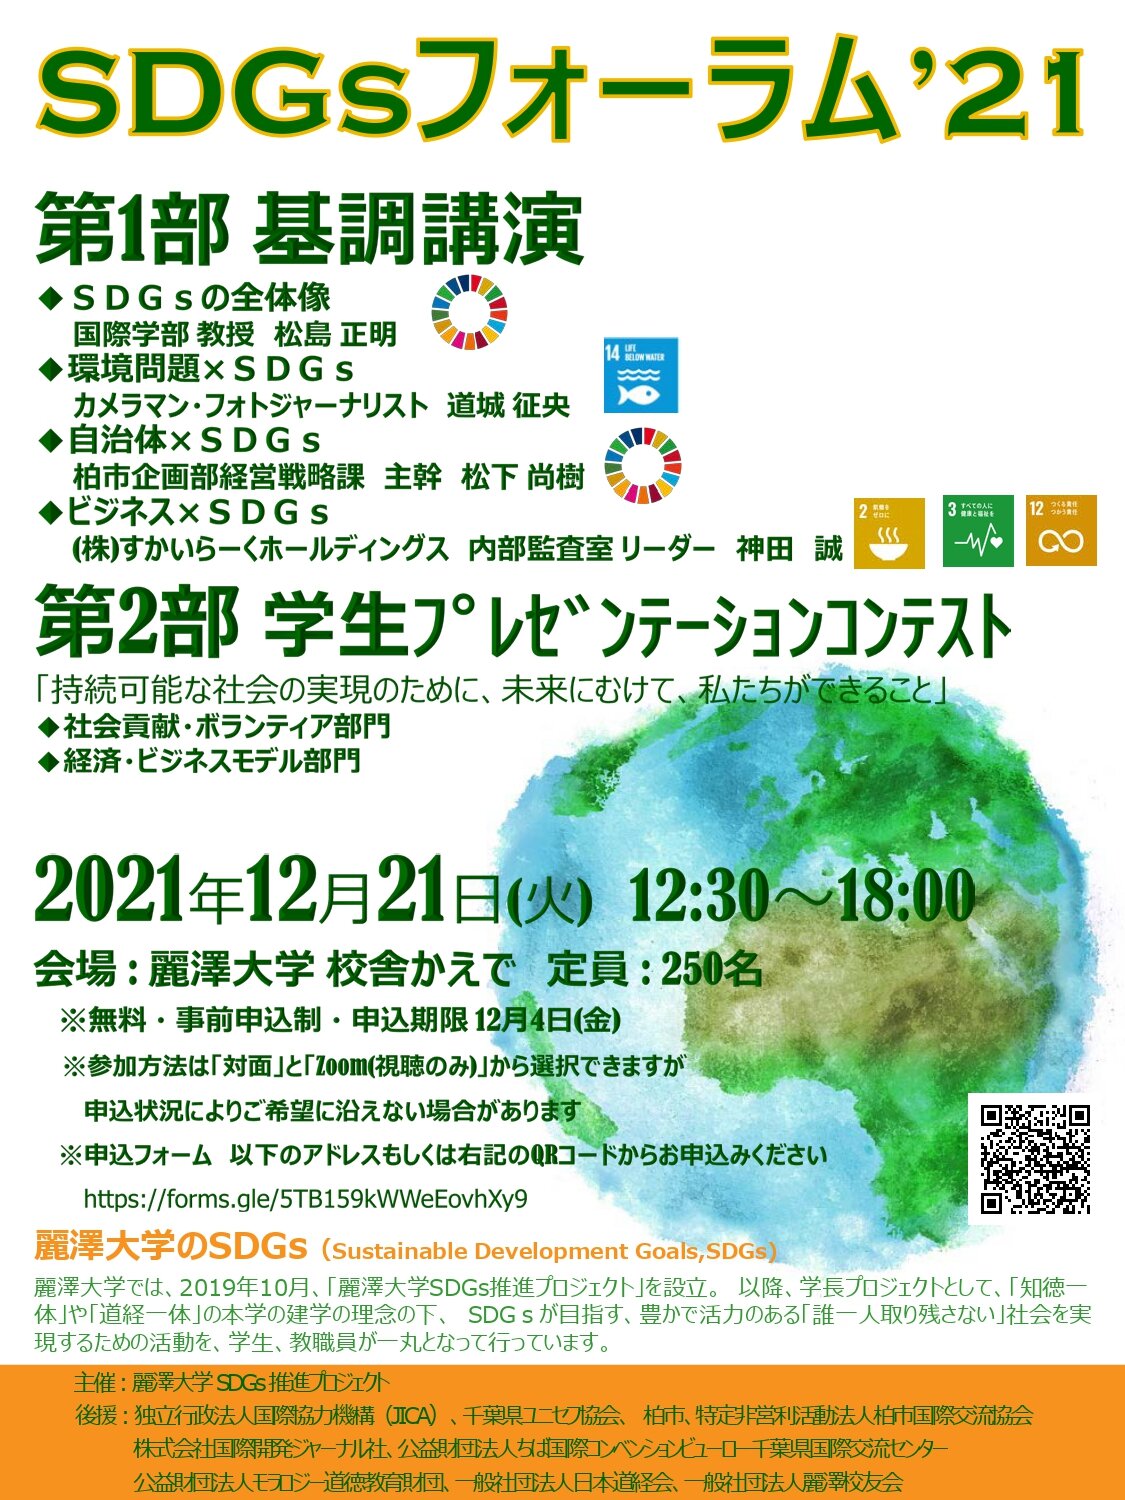 【開催案内】麗澤大学SDGsフォーラム2021